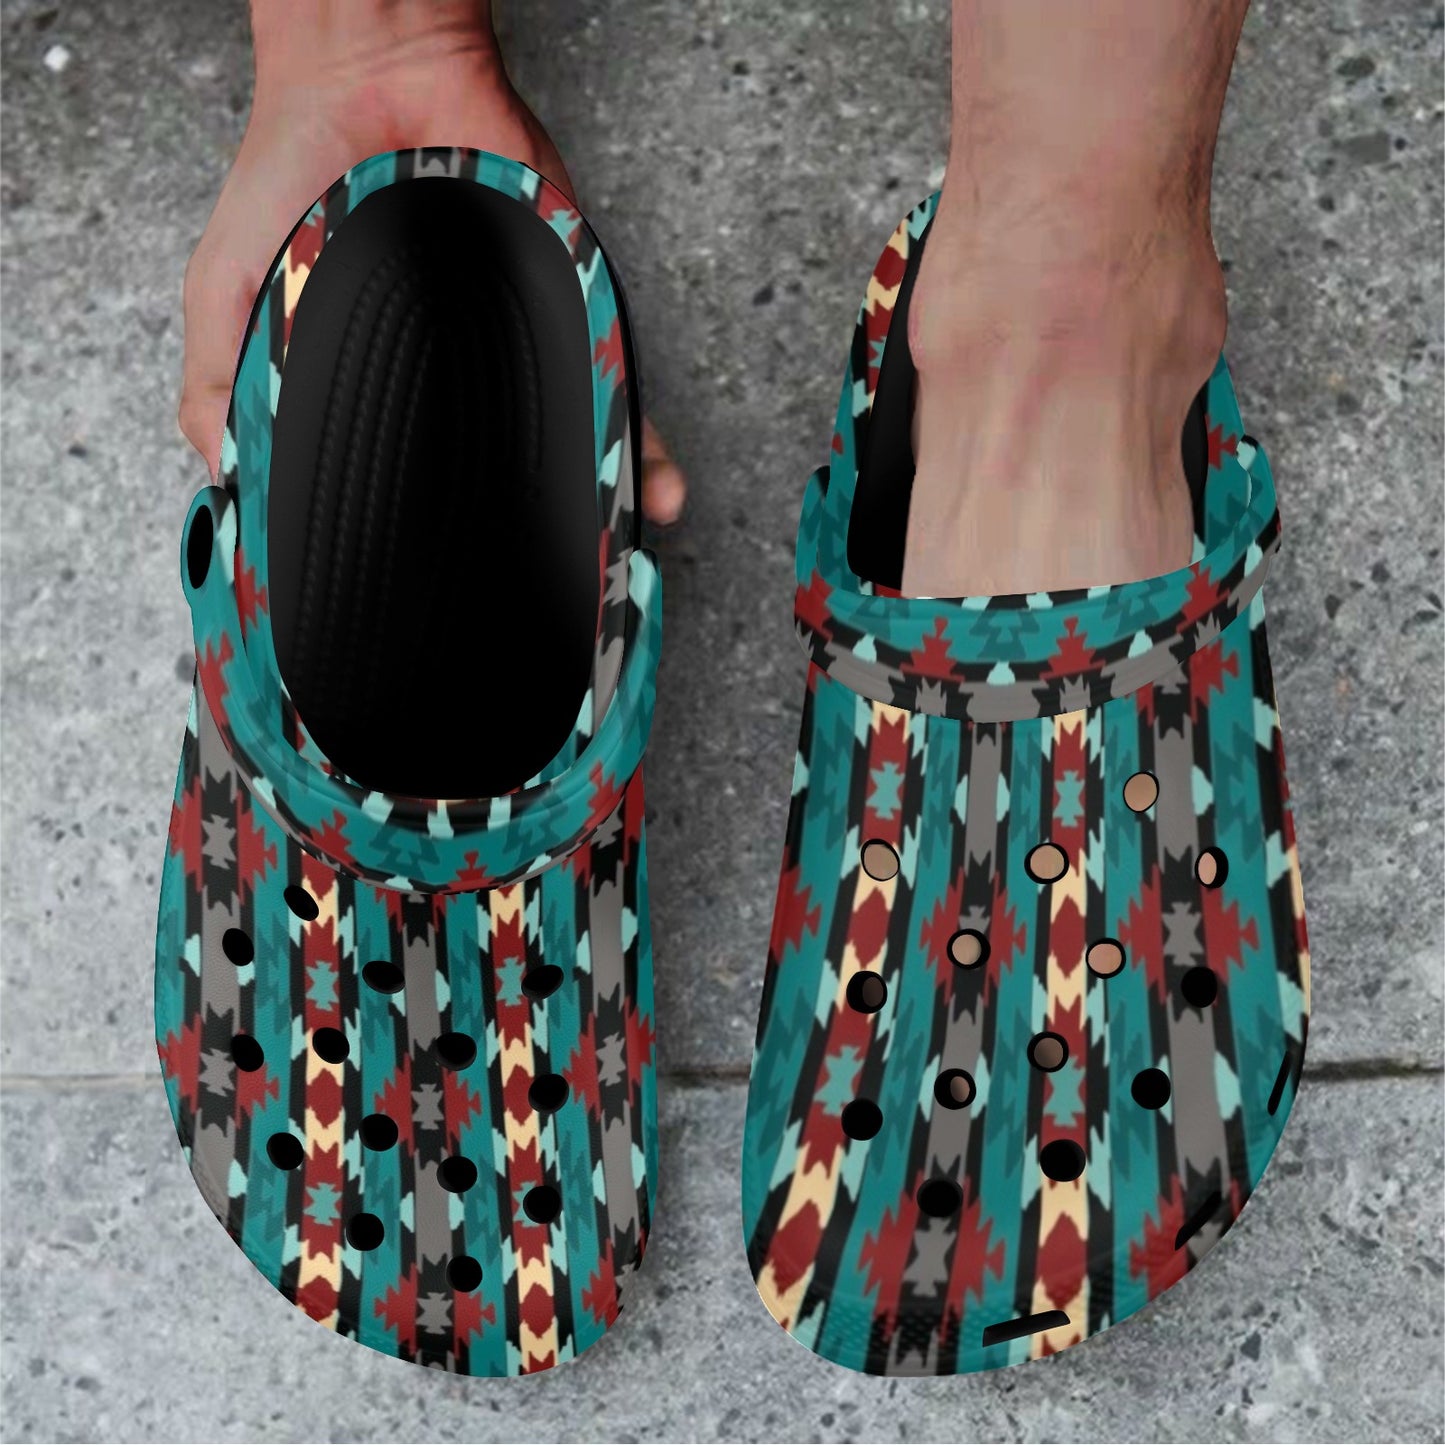 New Teal Aztec Clog Shoes